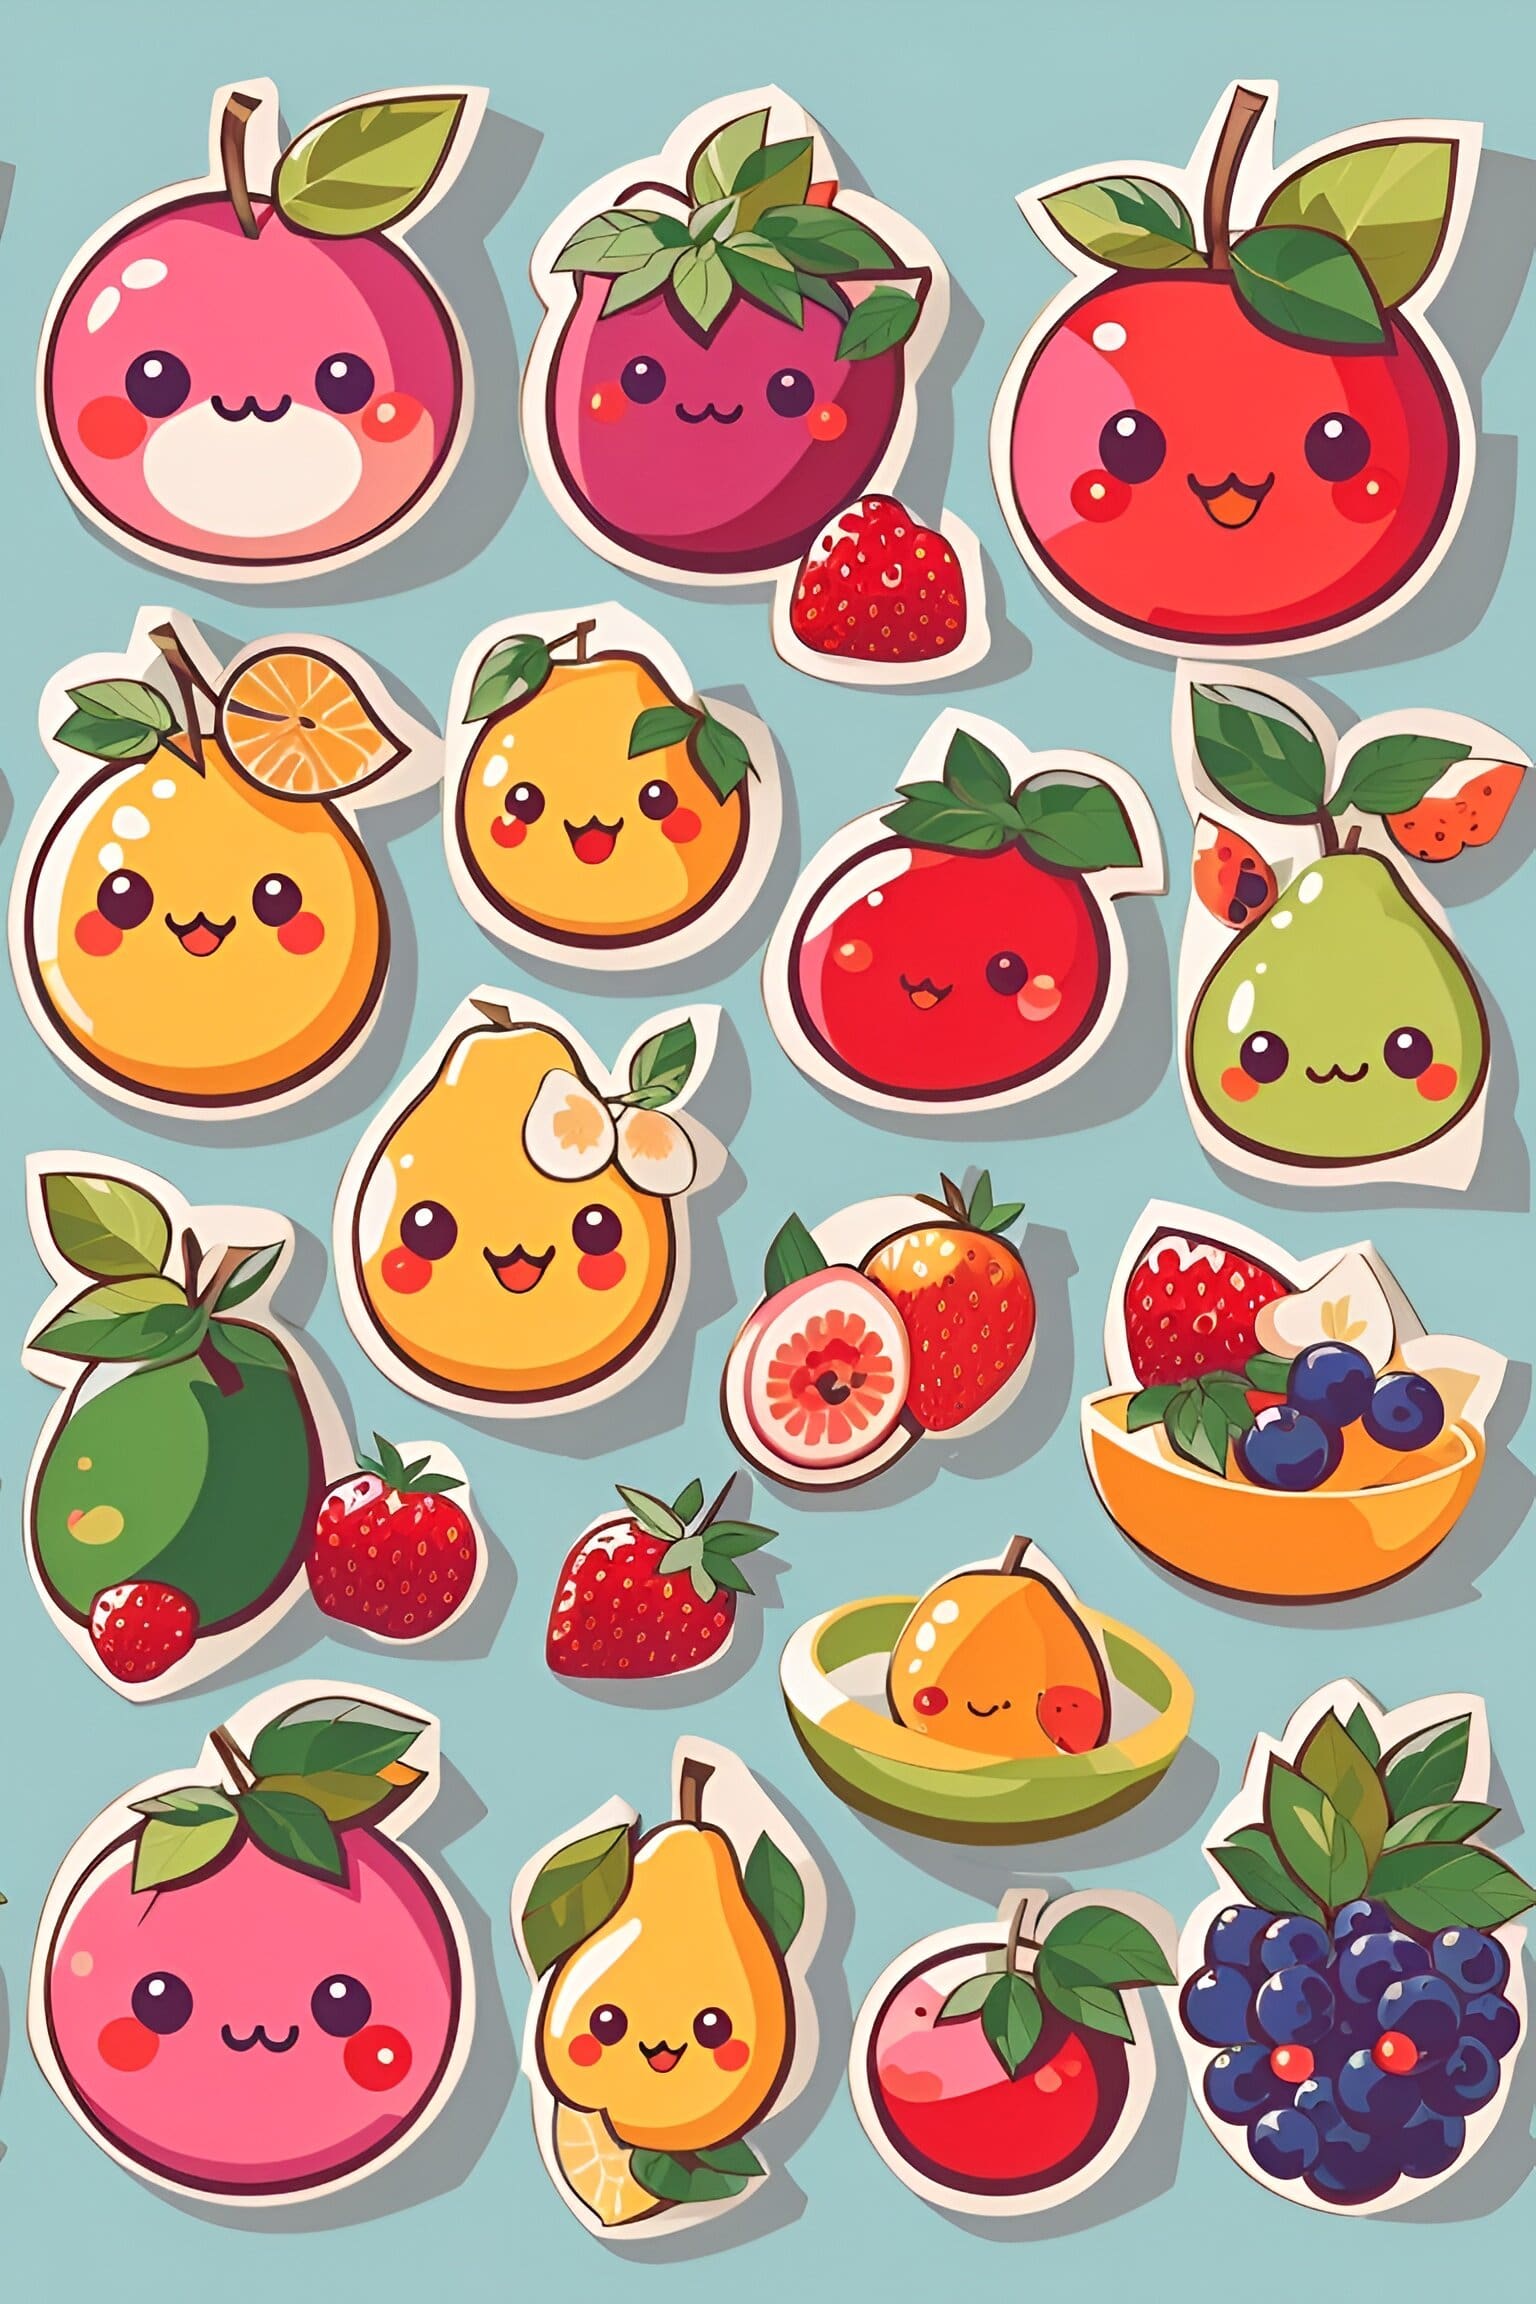 default many kawai cute fruits vector stickers 1 49b442d7 03e8 446e 808d d483ece748b9 1 1 89